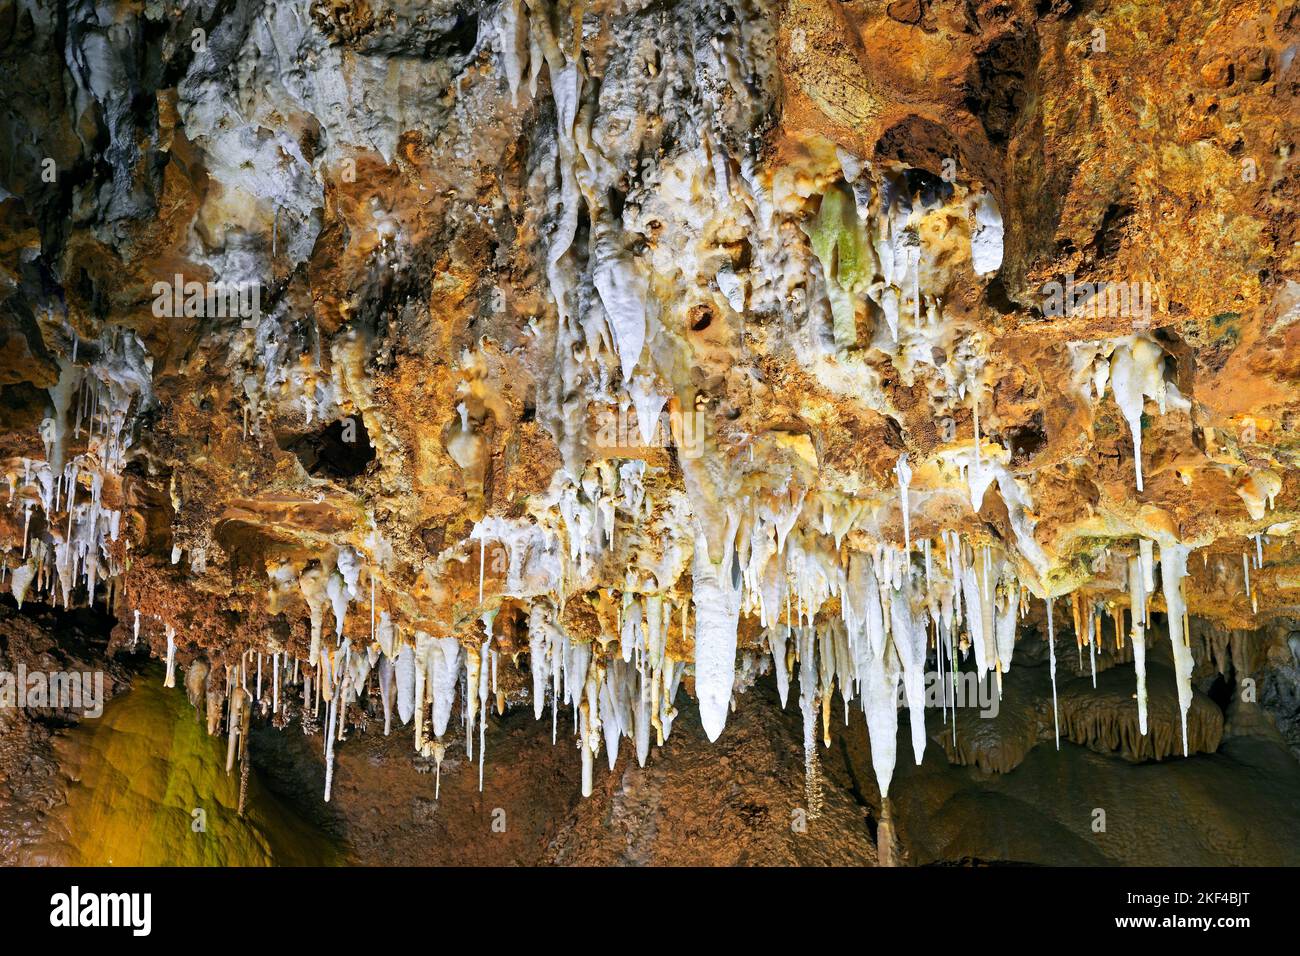 Tropfsteinhöhle in Frankreich, Südfrankreich, Alpes-Maritimes Stock Photo